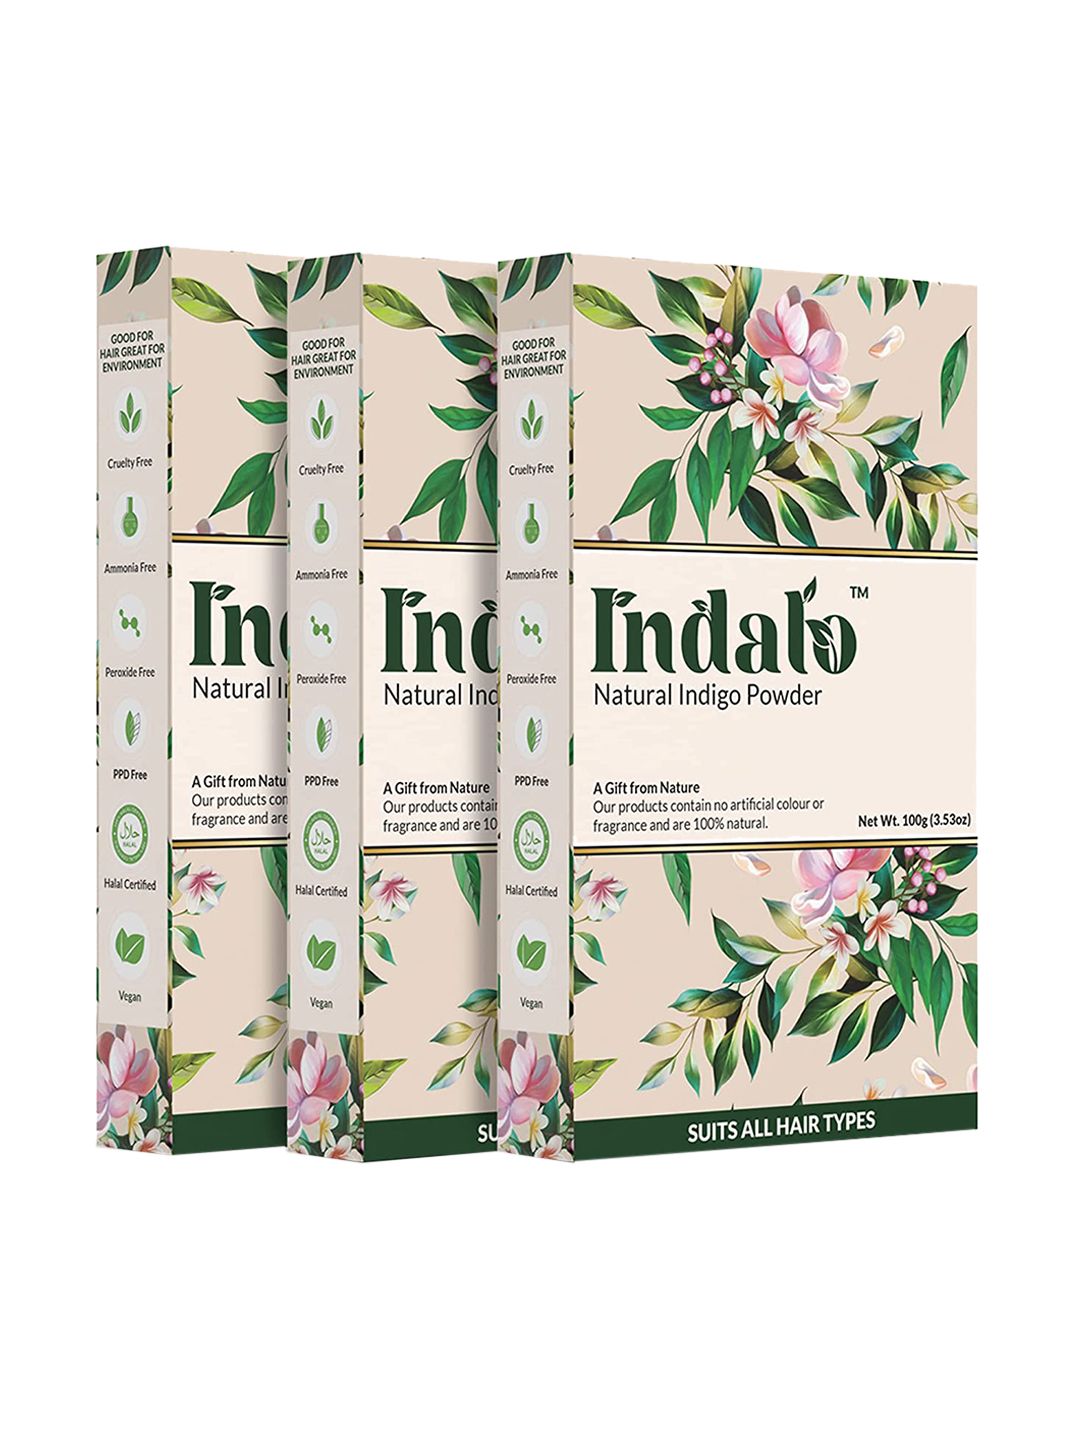 INDALO Natural Hair Colour Indigo 100gm Each Price in India